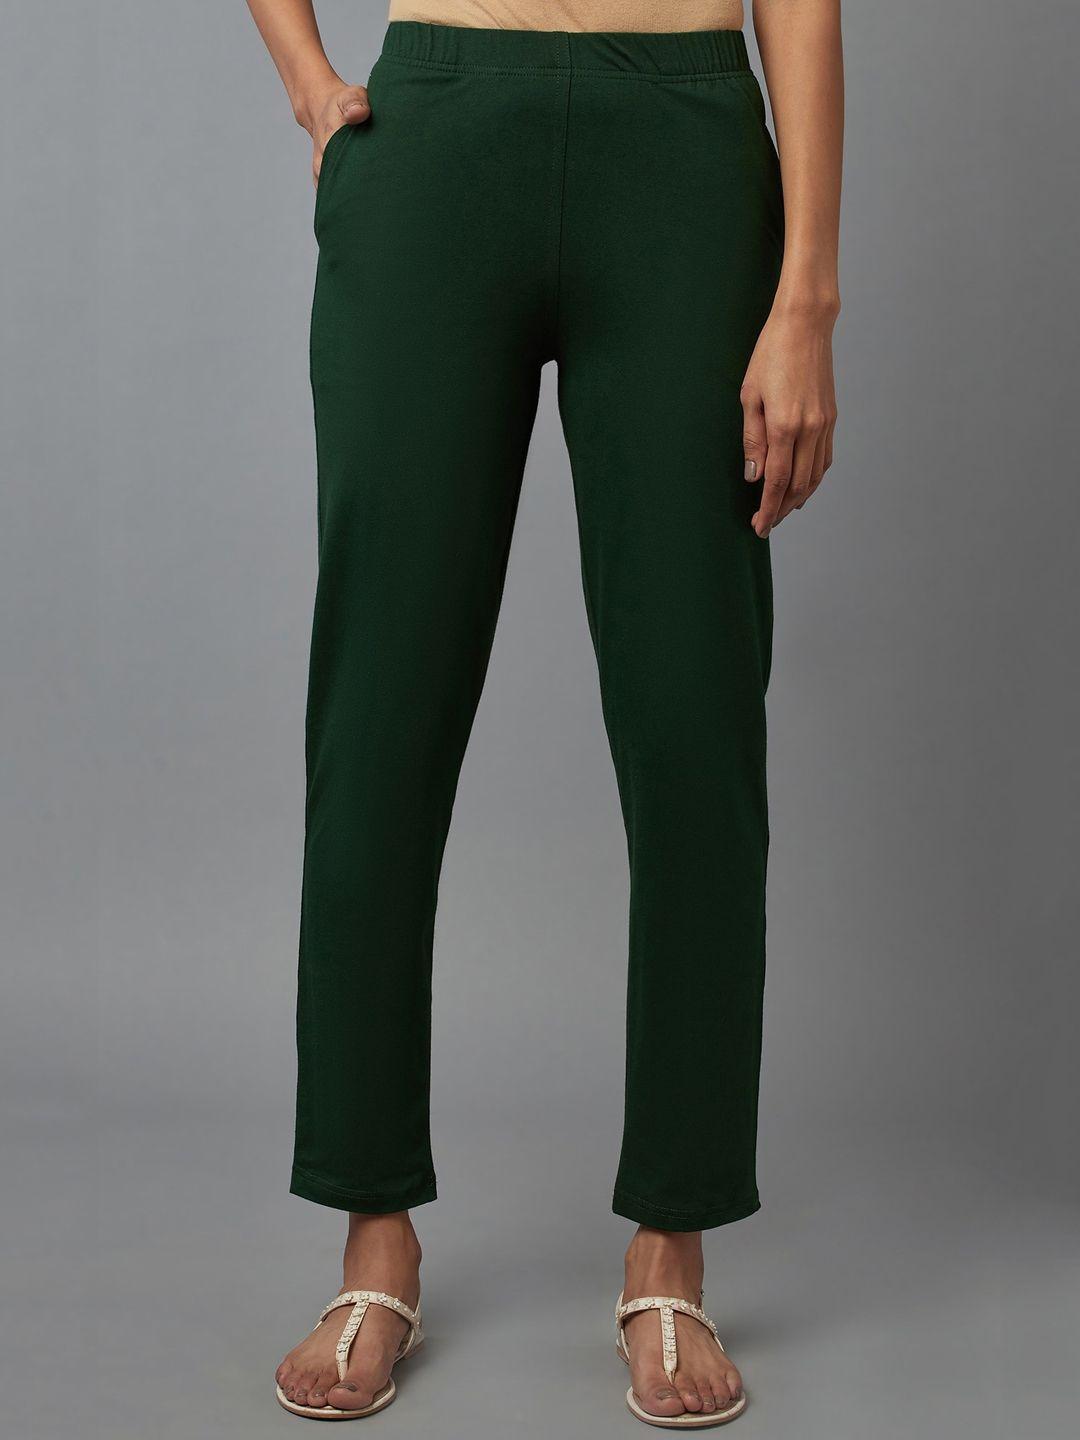 elleven woman green trousers